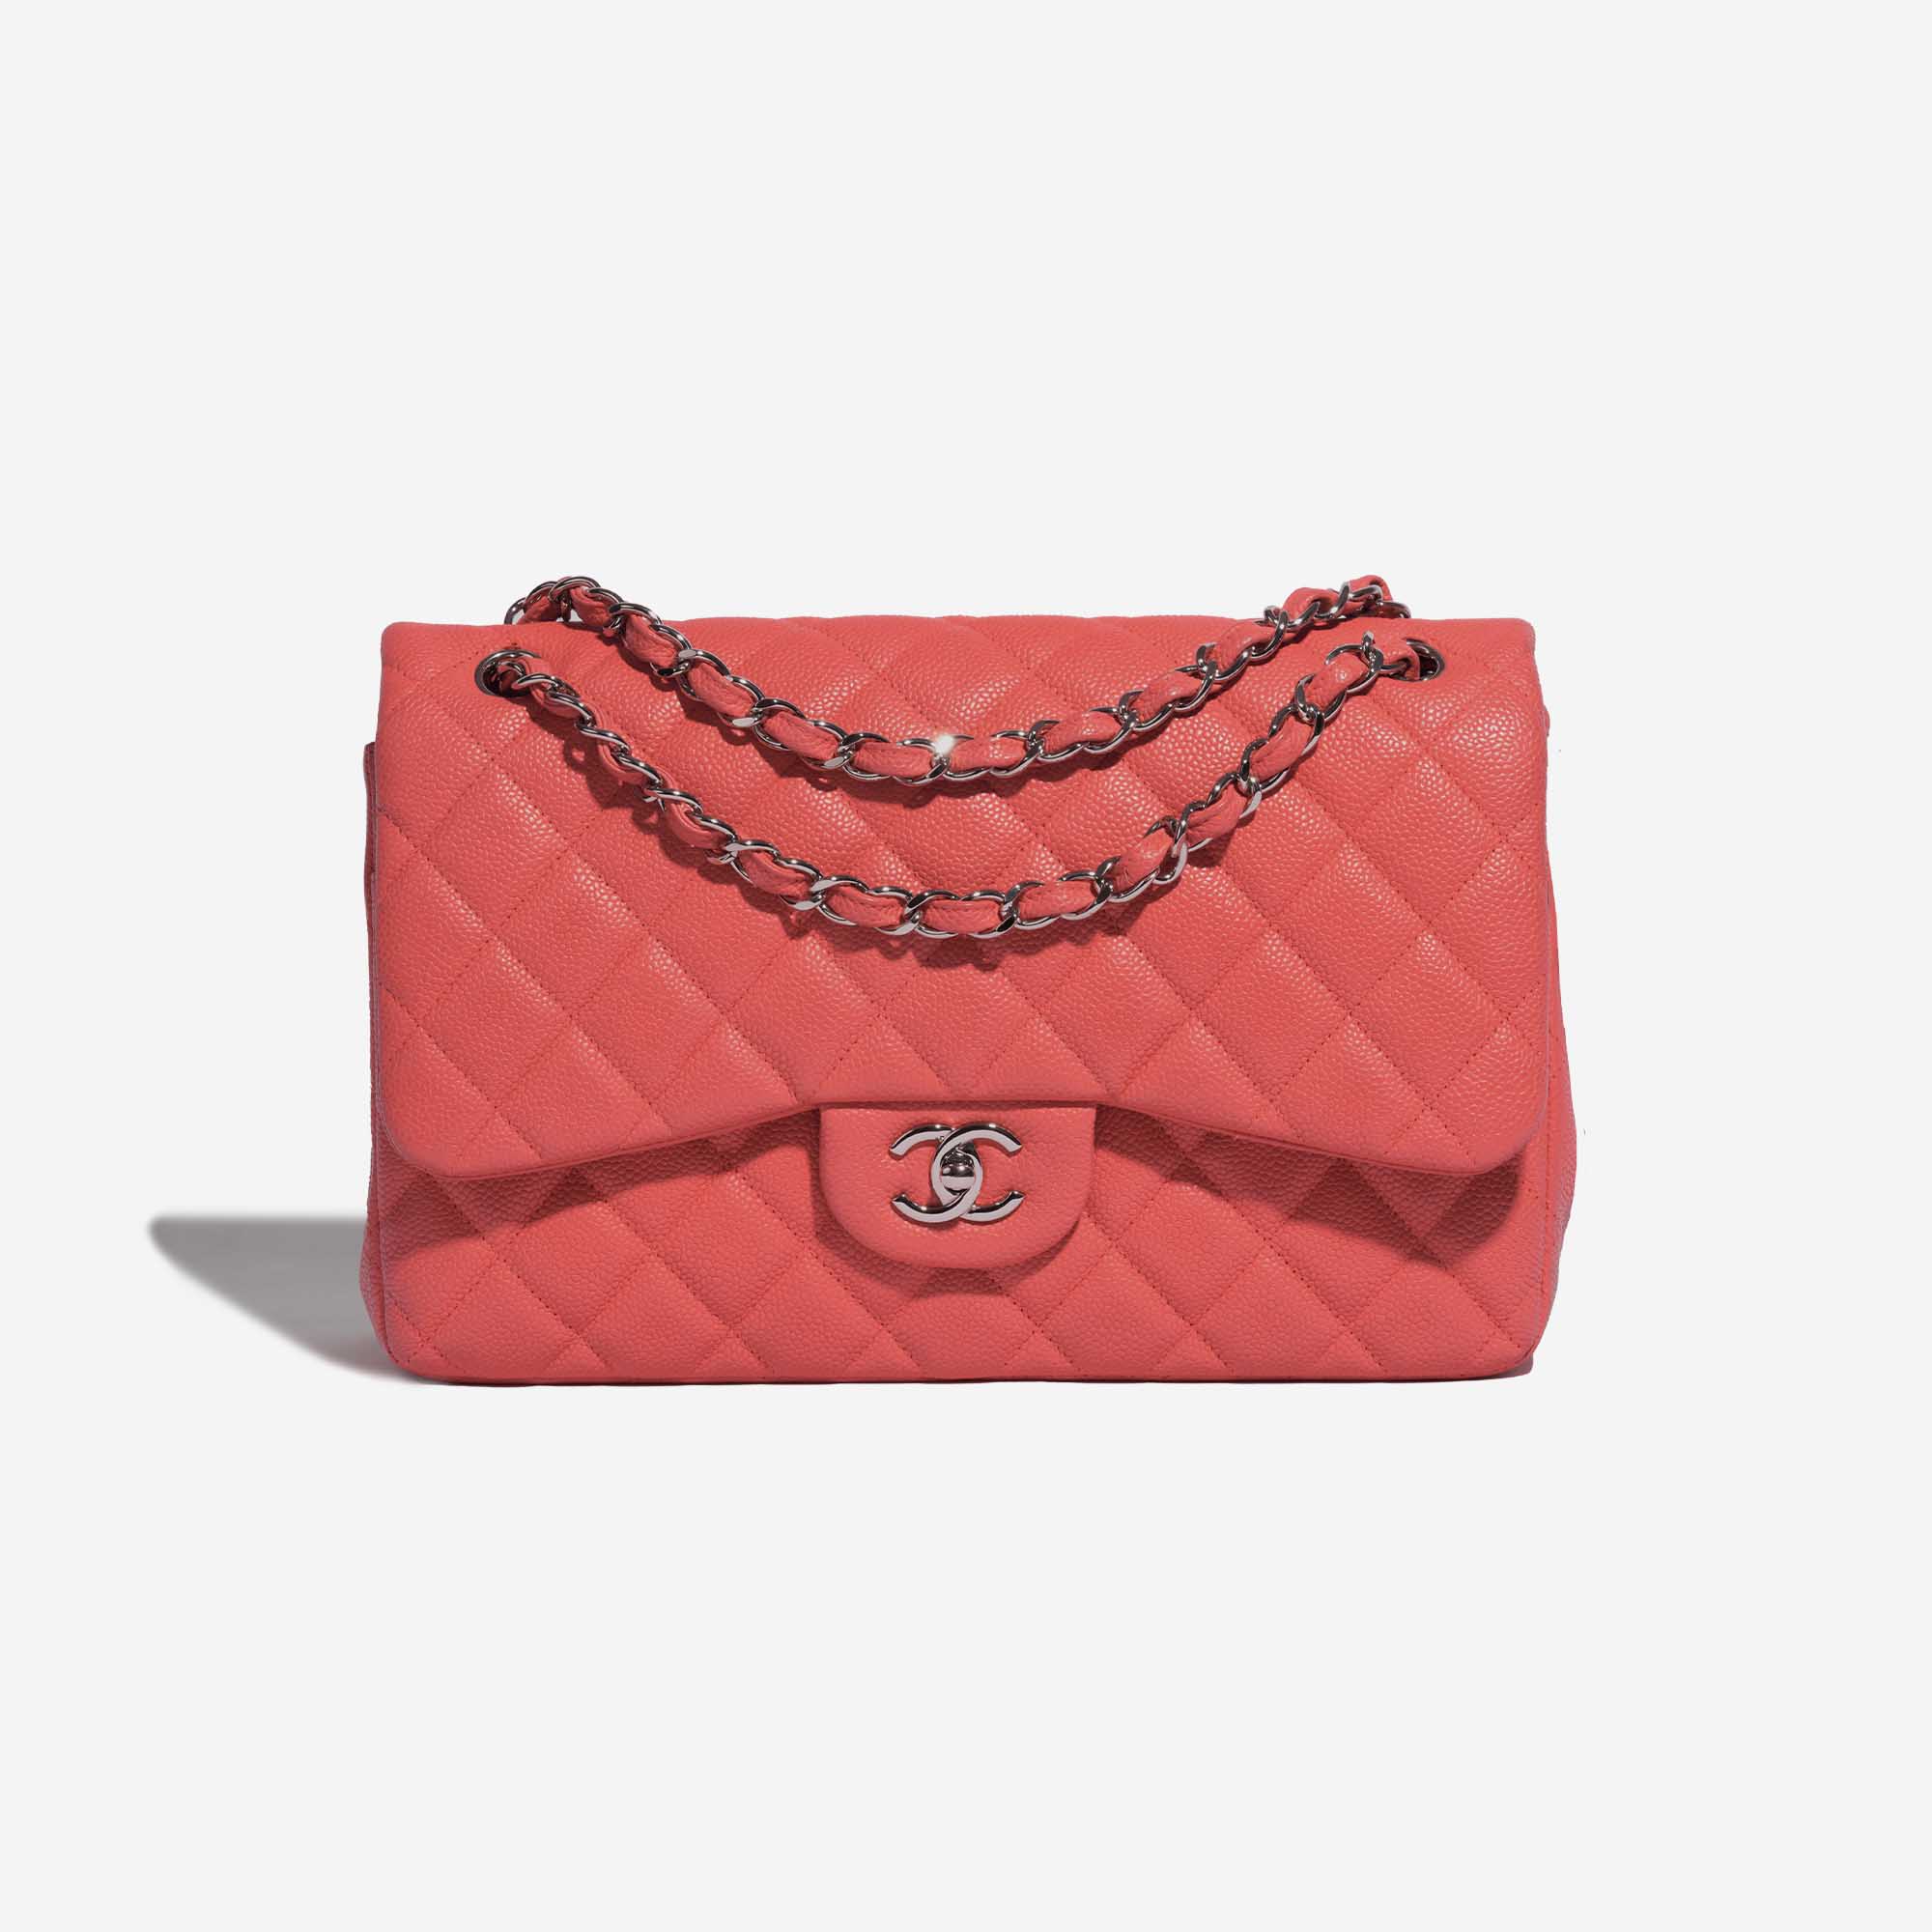 Sac Chanel d'occasion Classique Jumbo Caviar Coral Pink Front | Vendez votre sac de créateur sur Saclab.com